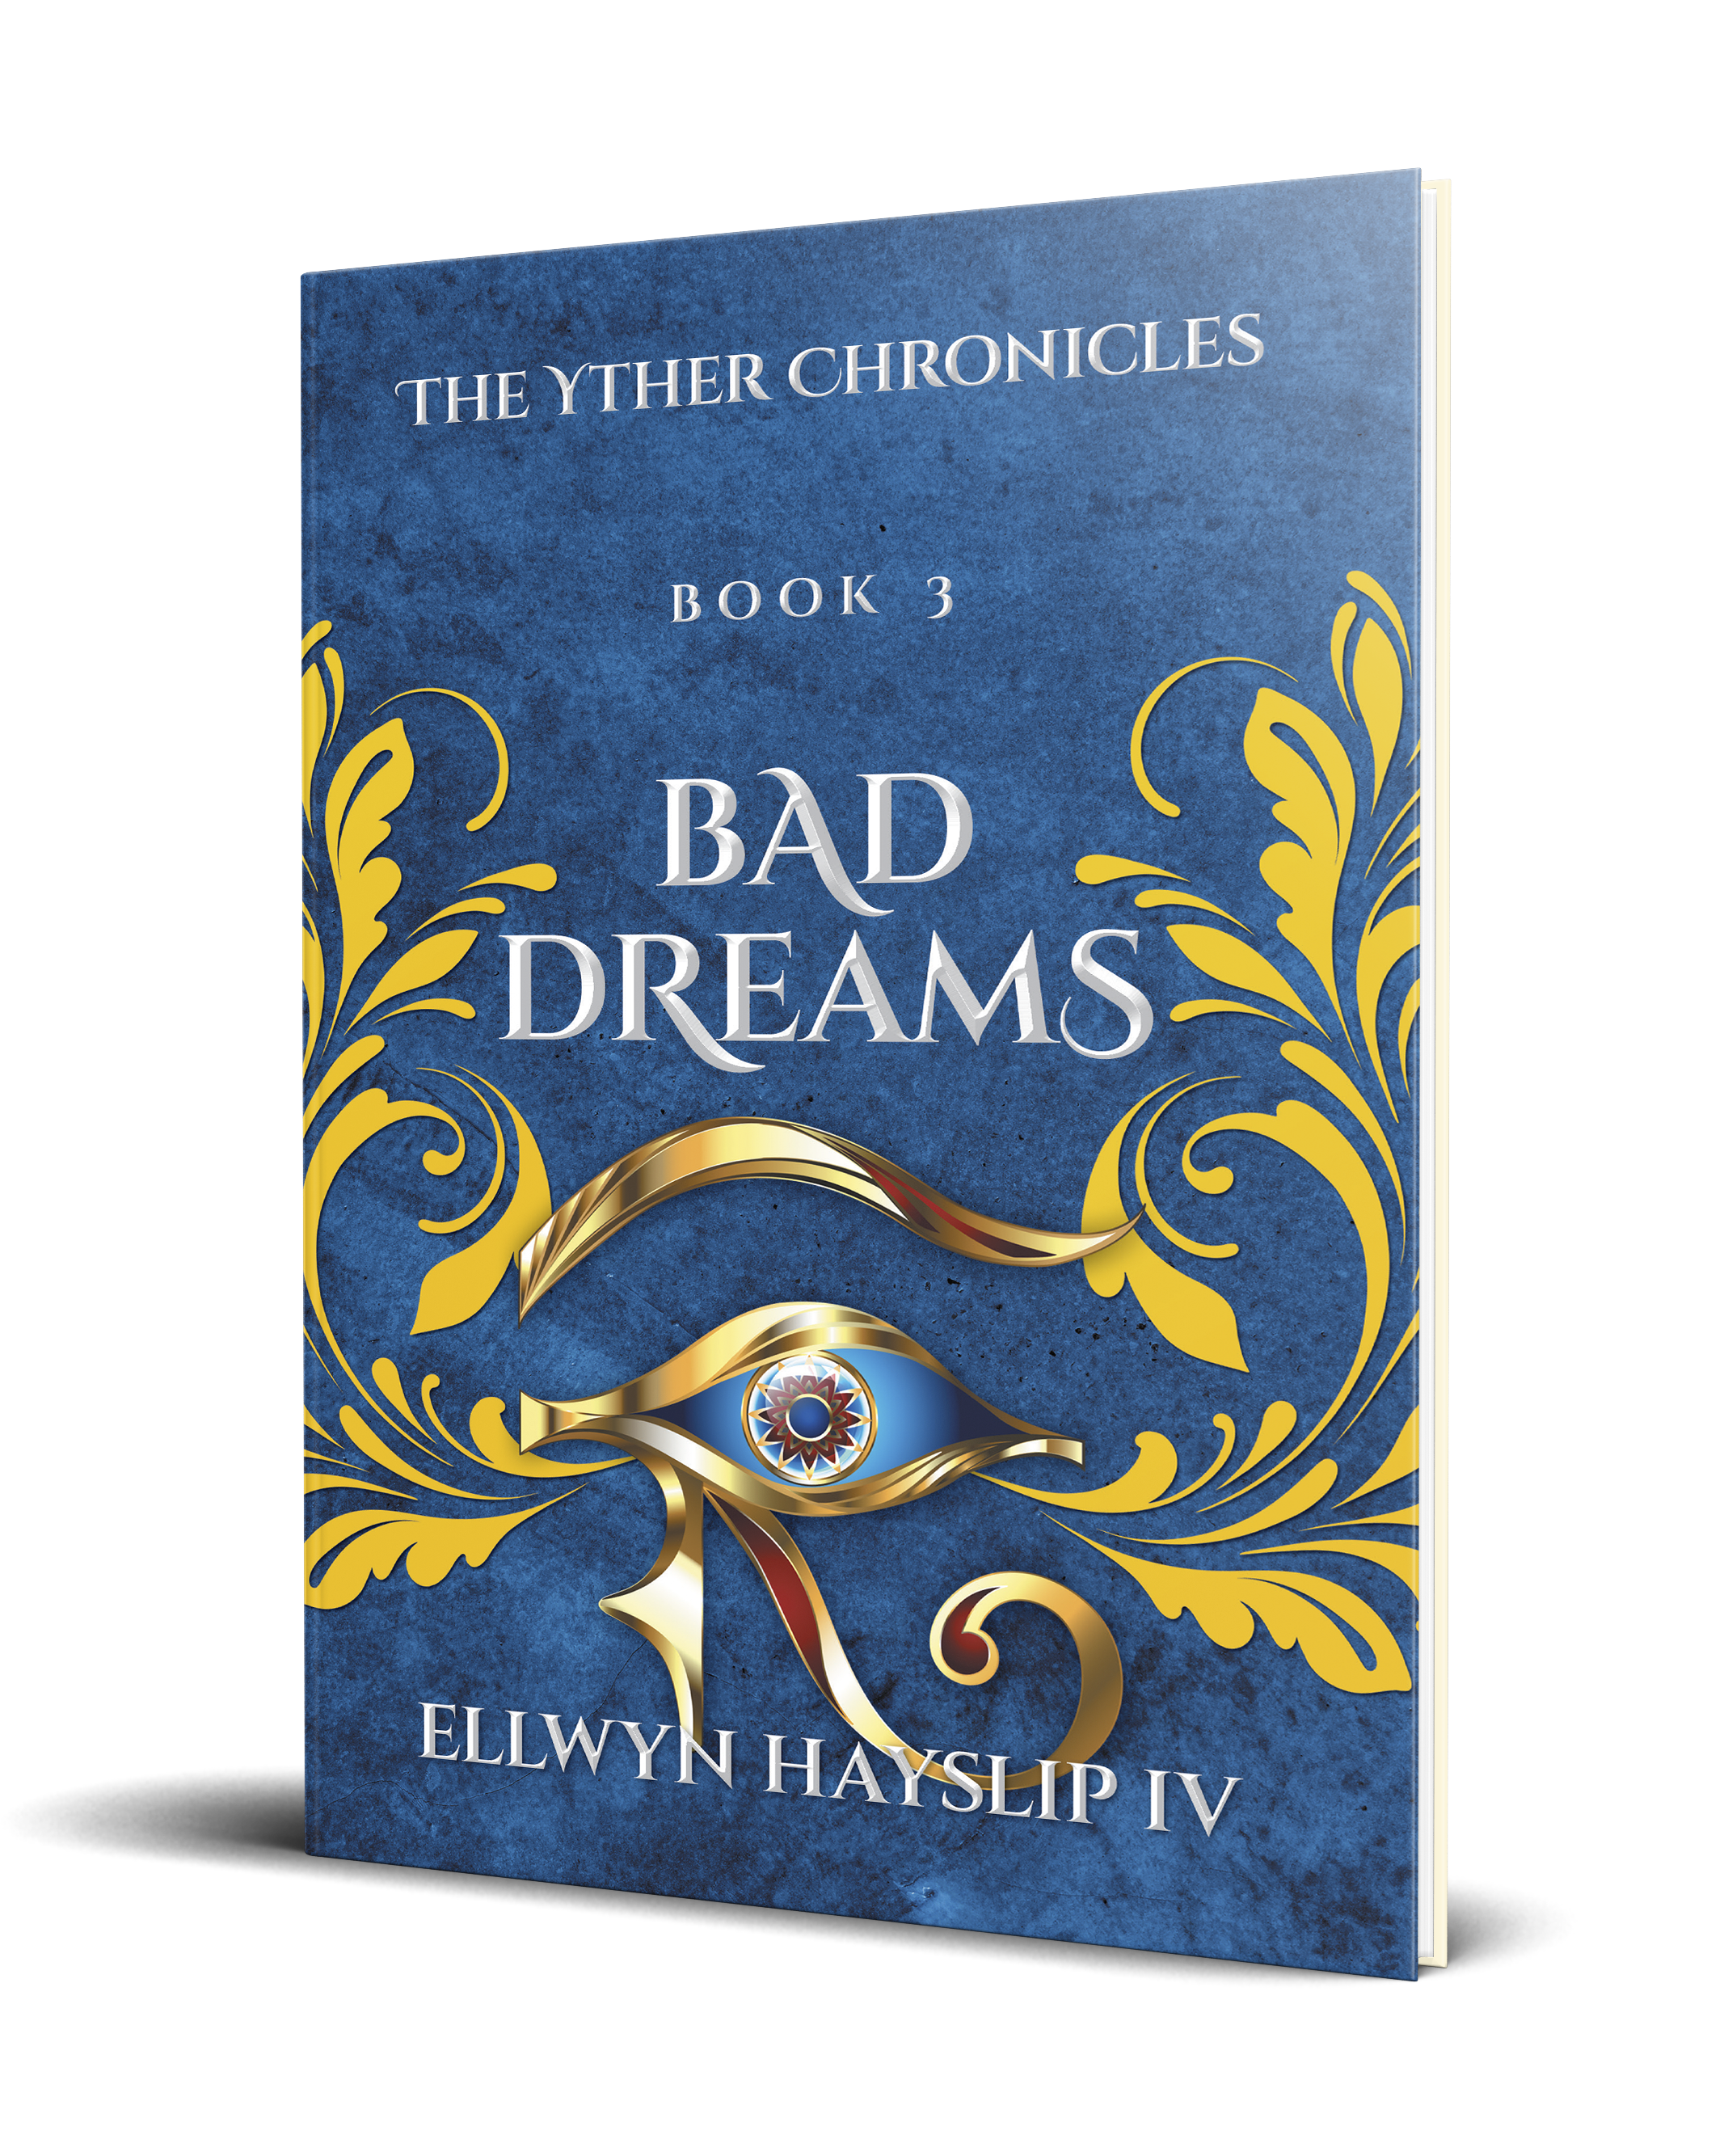 The Yther Chronicles "Bad Dreams" by Ellwyn Hayslip IV